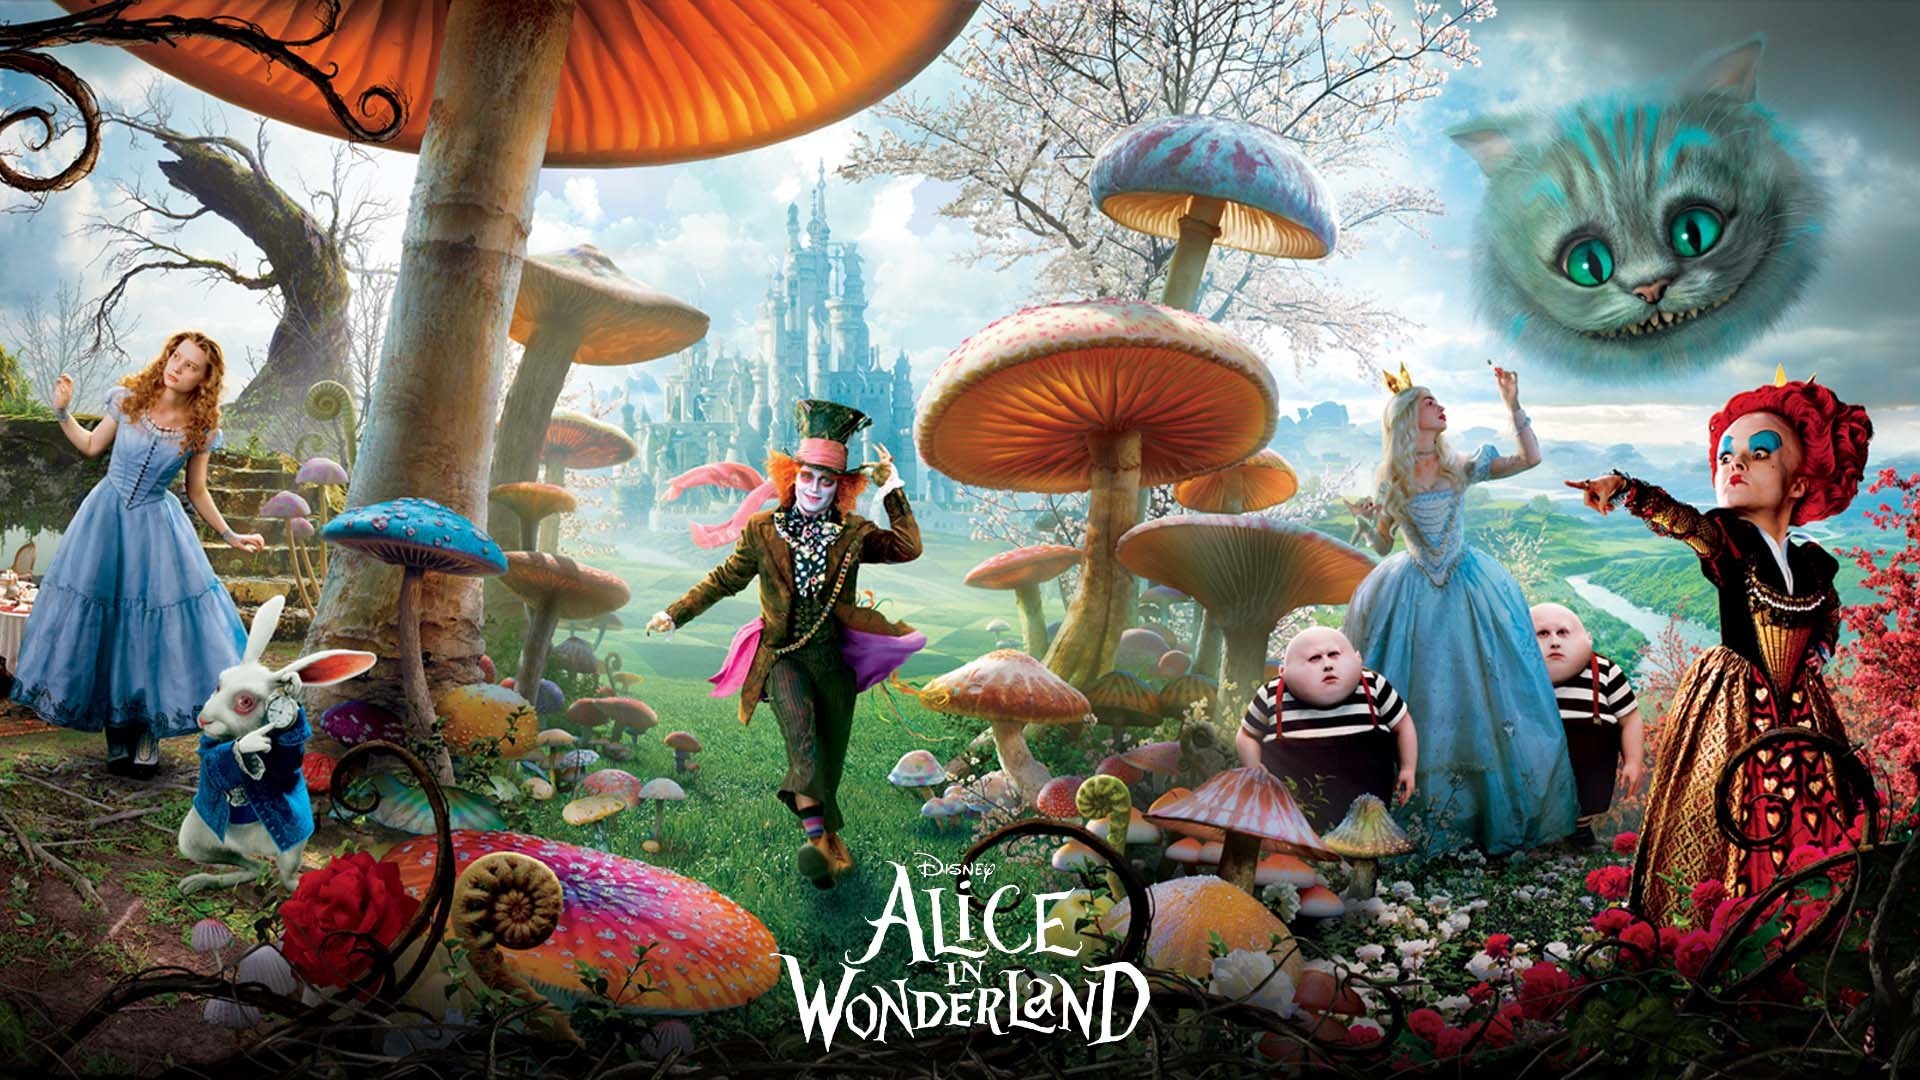 Alice in Wonderland - Coffey Talk